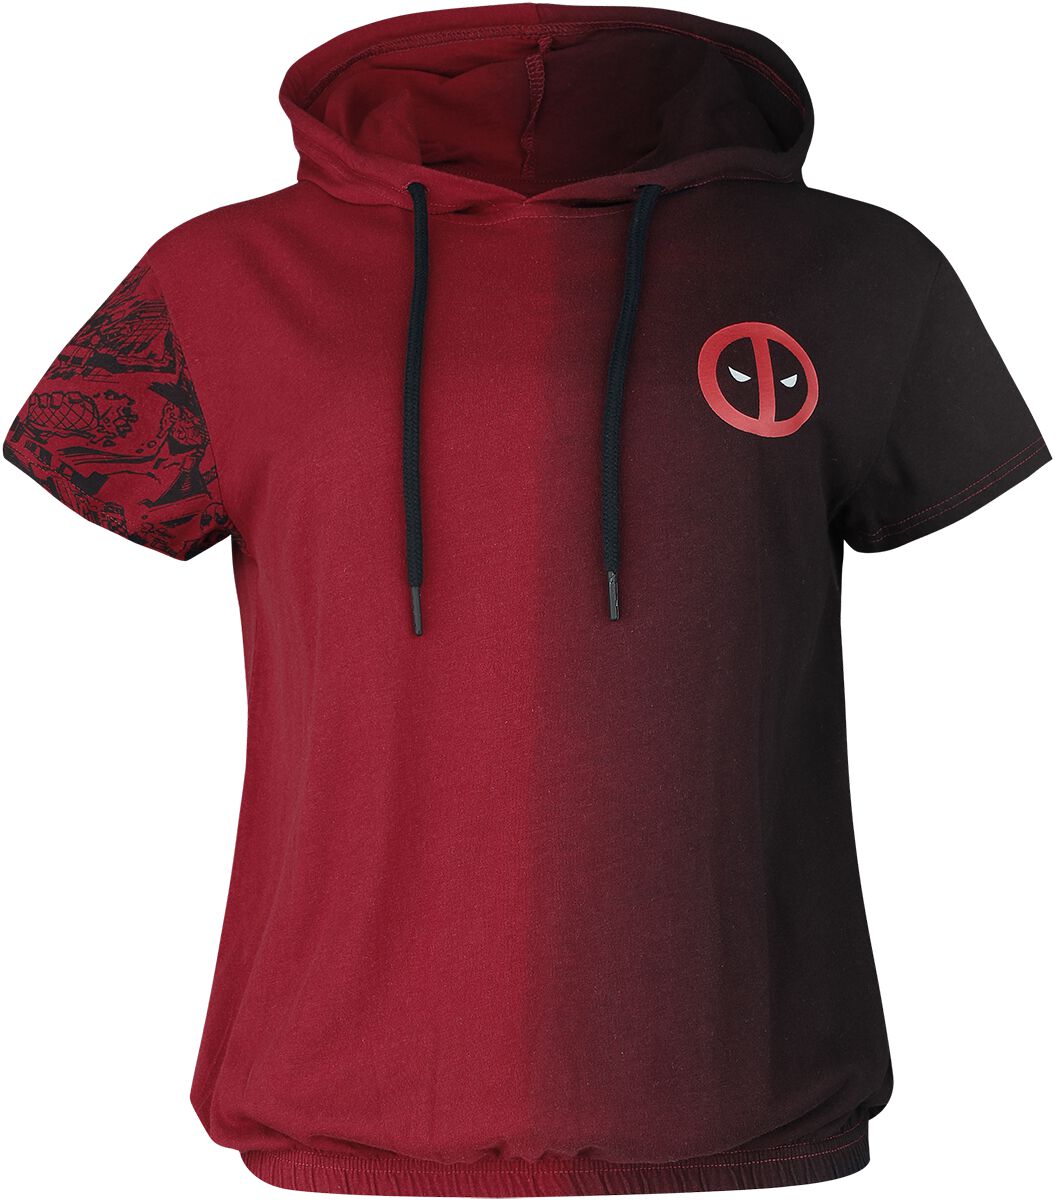 T-Shirt Manches courtes de Deadpool - Merc With A Mouth - S à XXL - pour Femme - rouge/noir